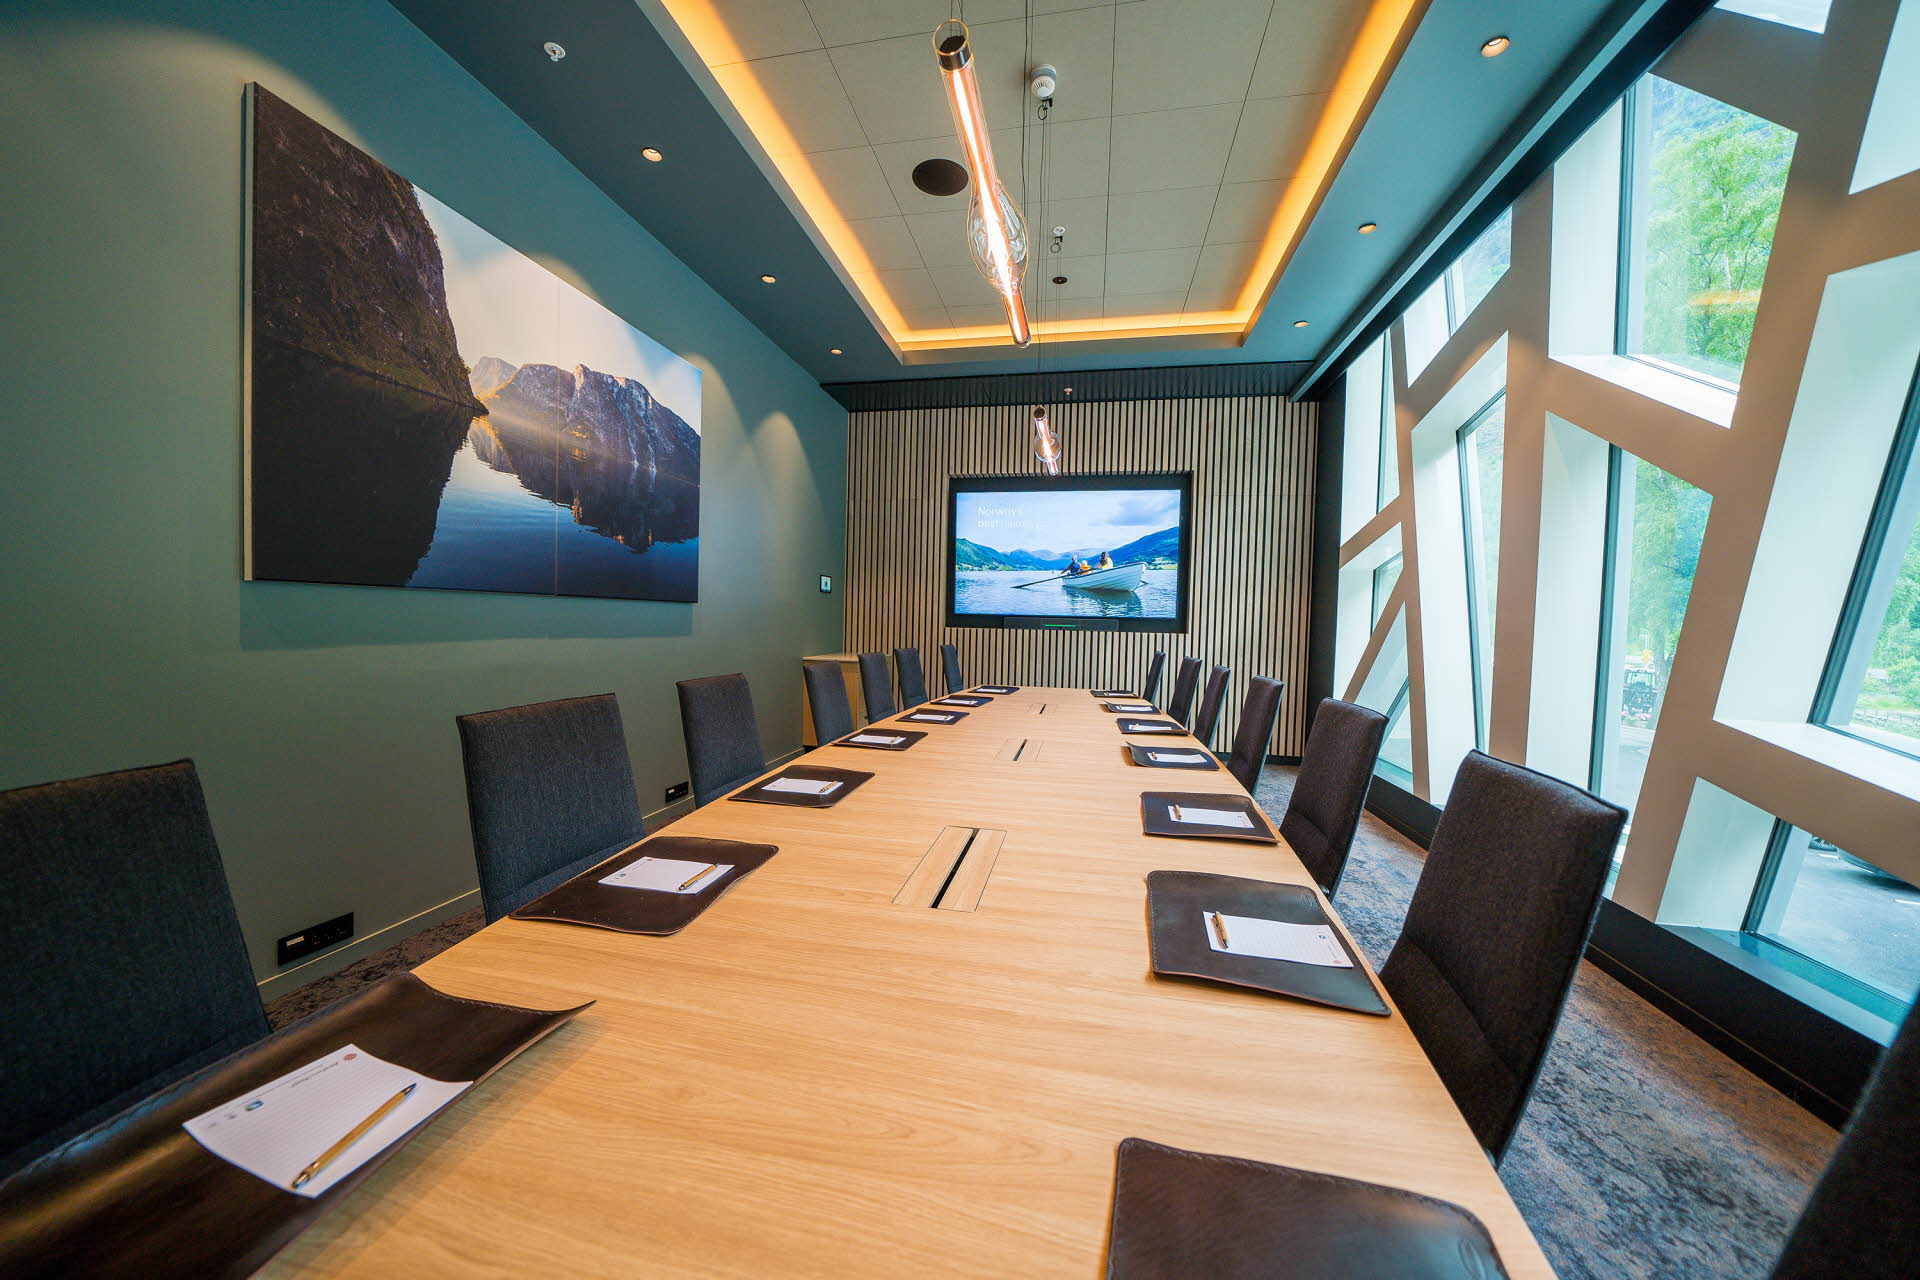 Une salle de réunion avec une longue table et des chaises en cuir. De grandes fenêtres, une photographie et un écran sur les murs. 